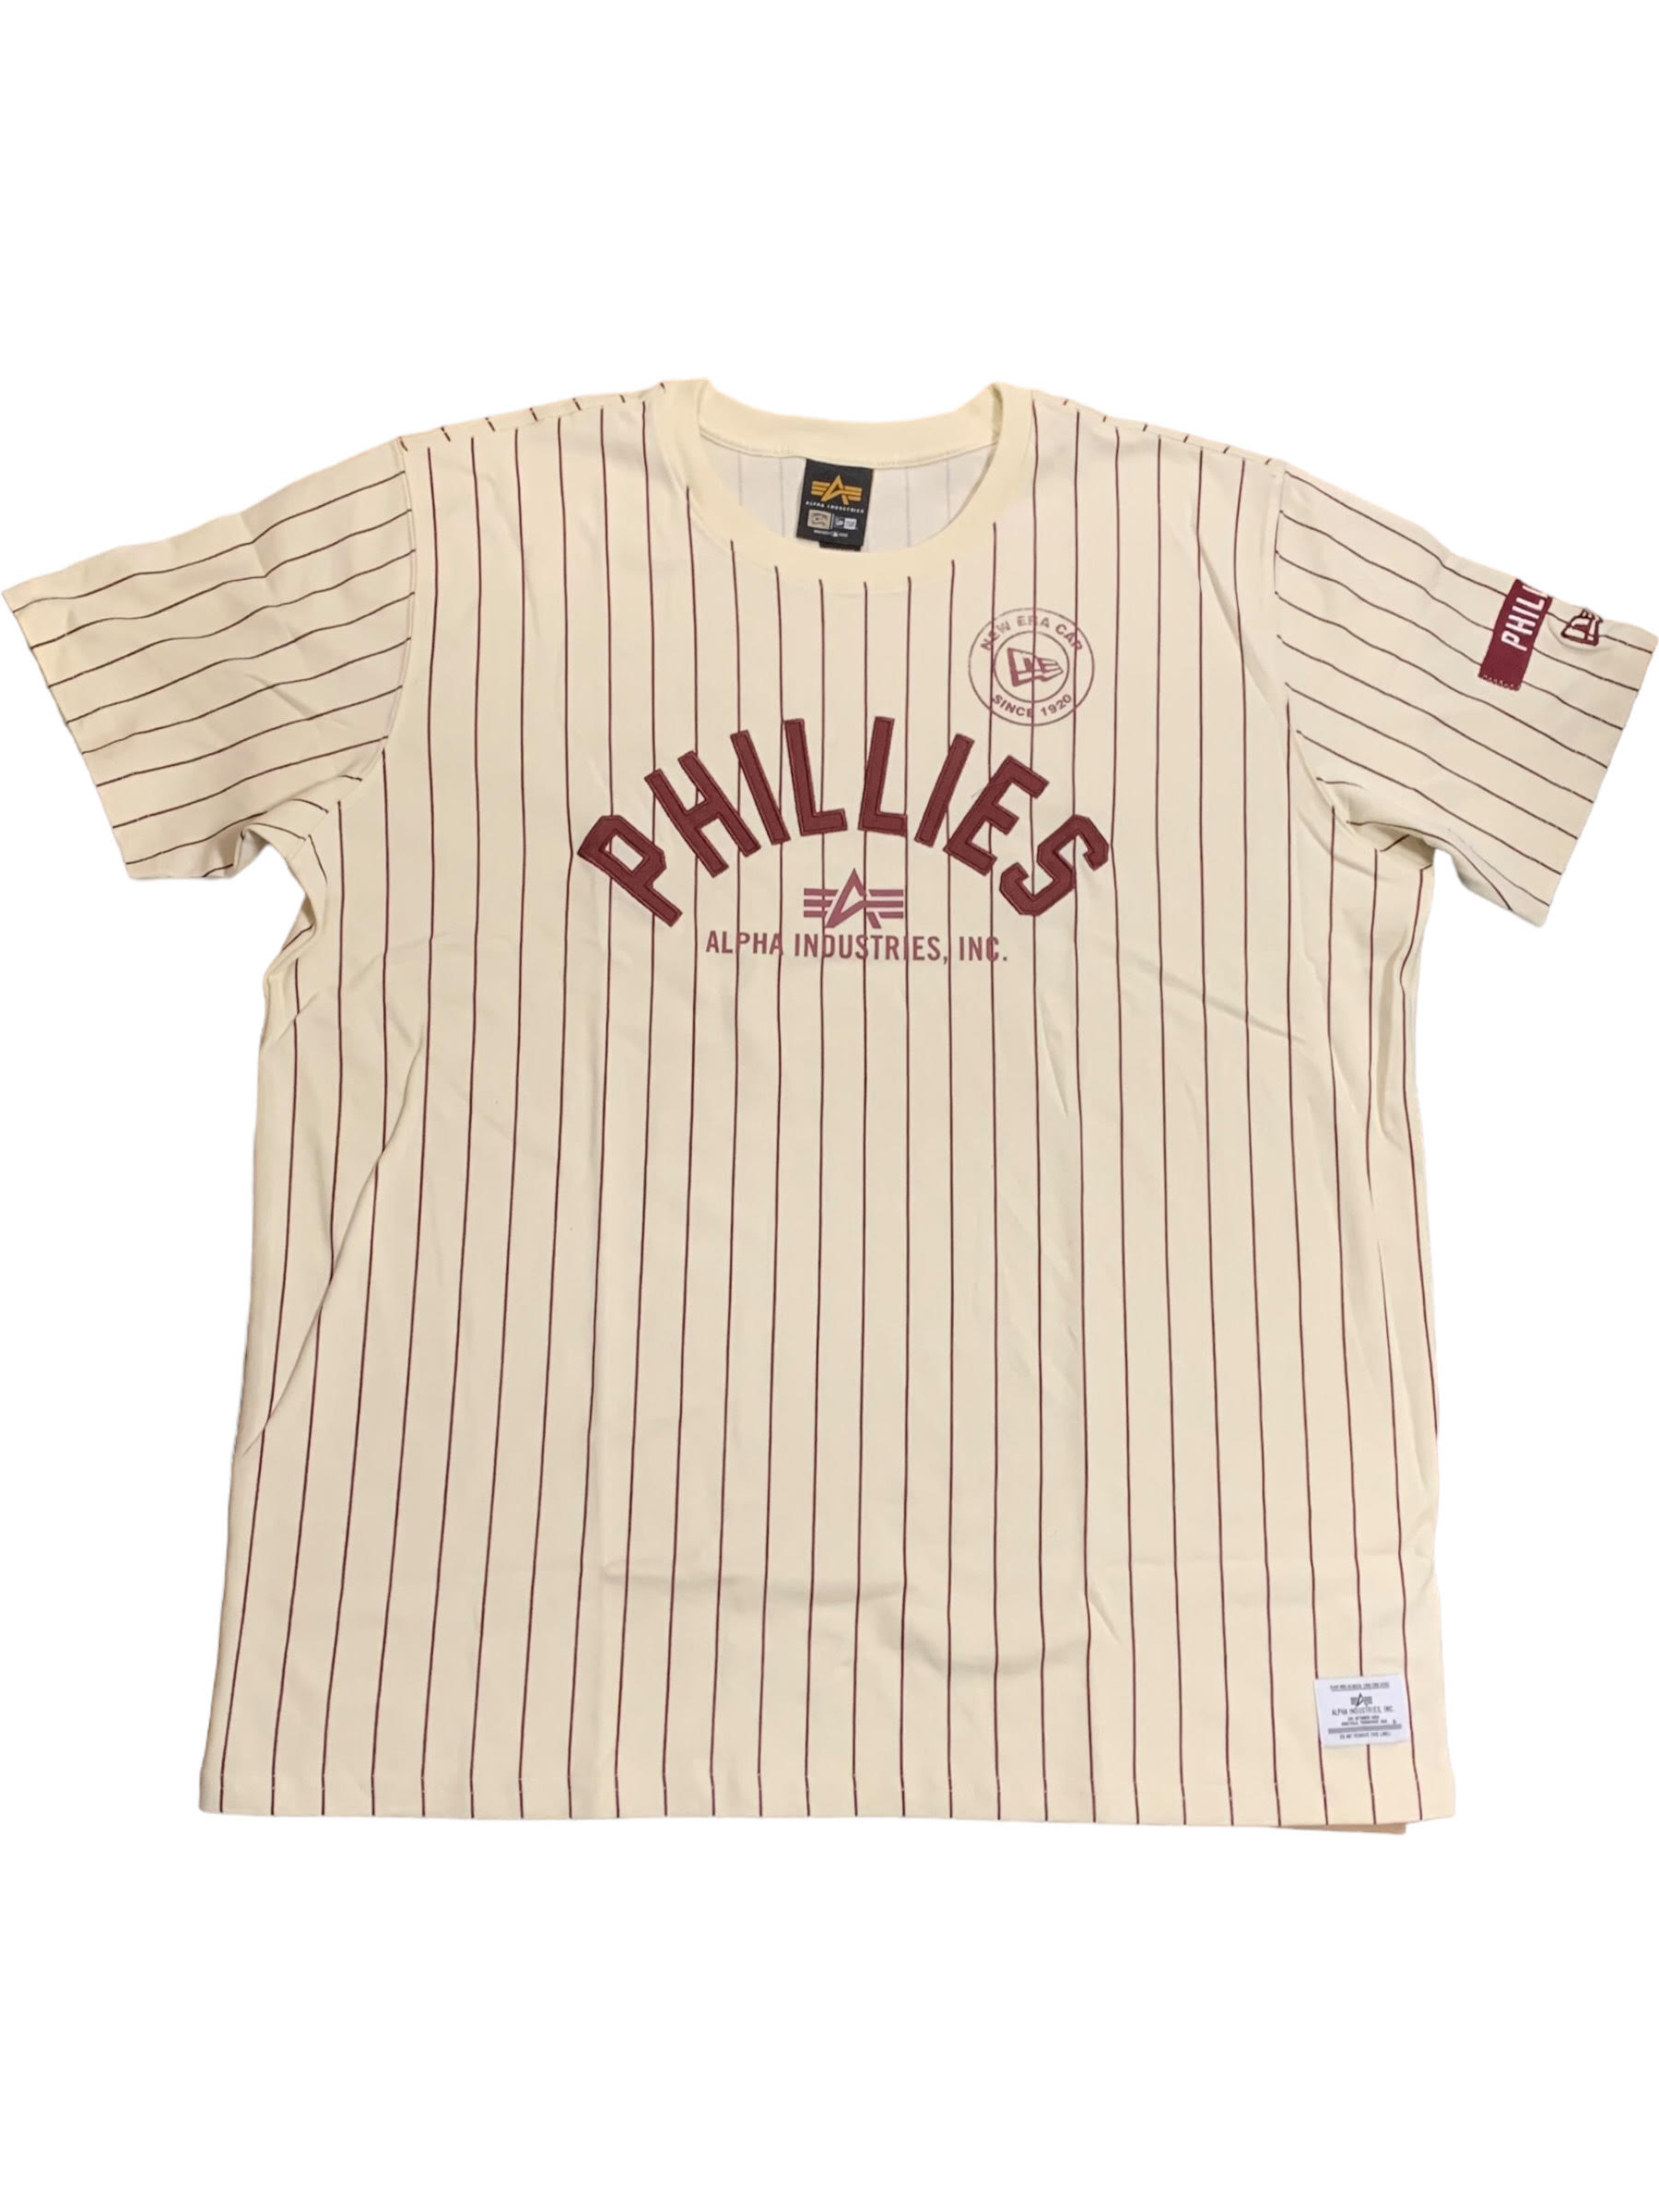 phillies philadelphia jersey